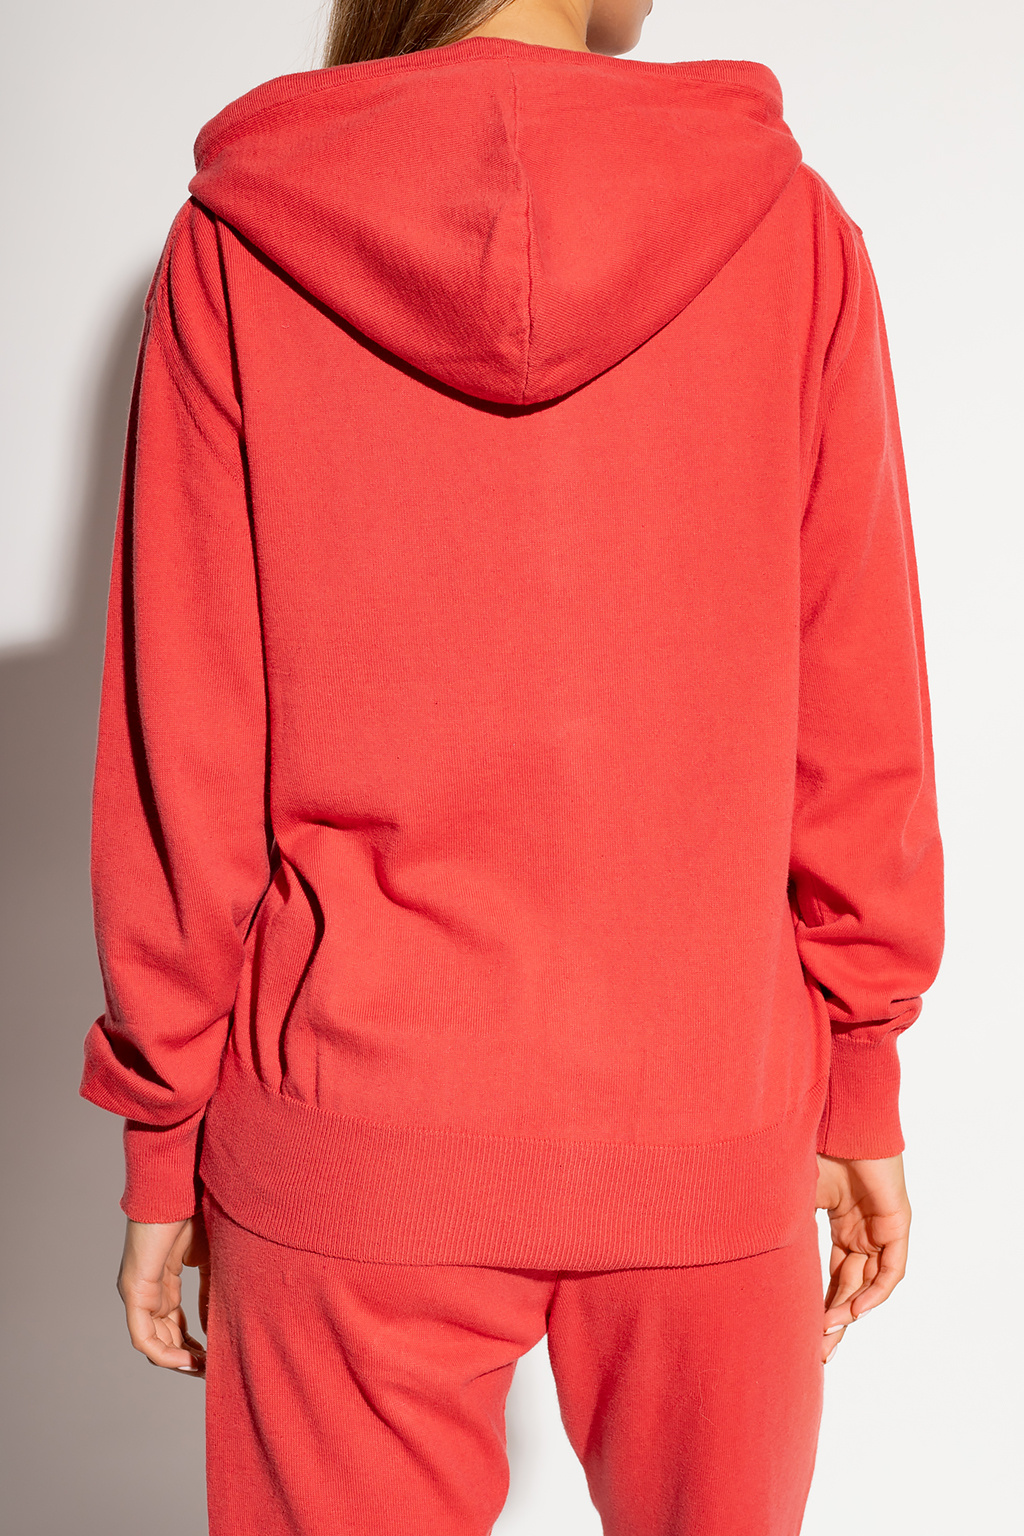 Vivienne Westwood Hooded sweater